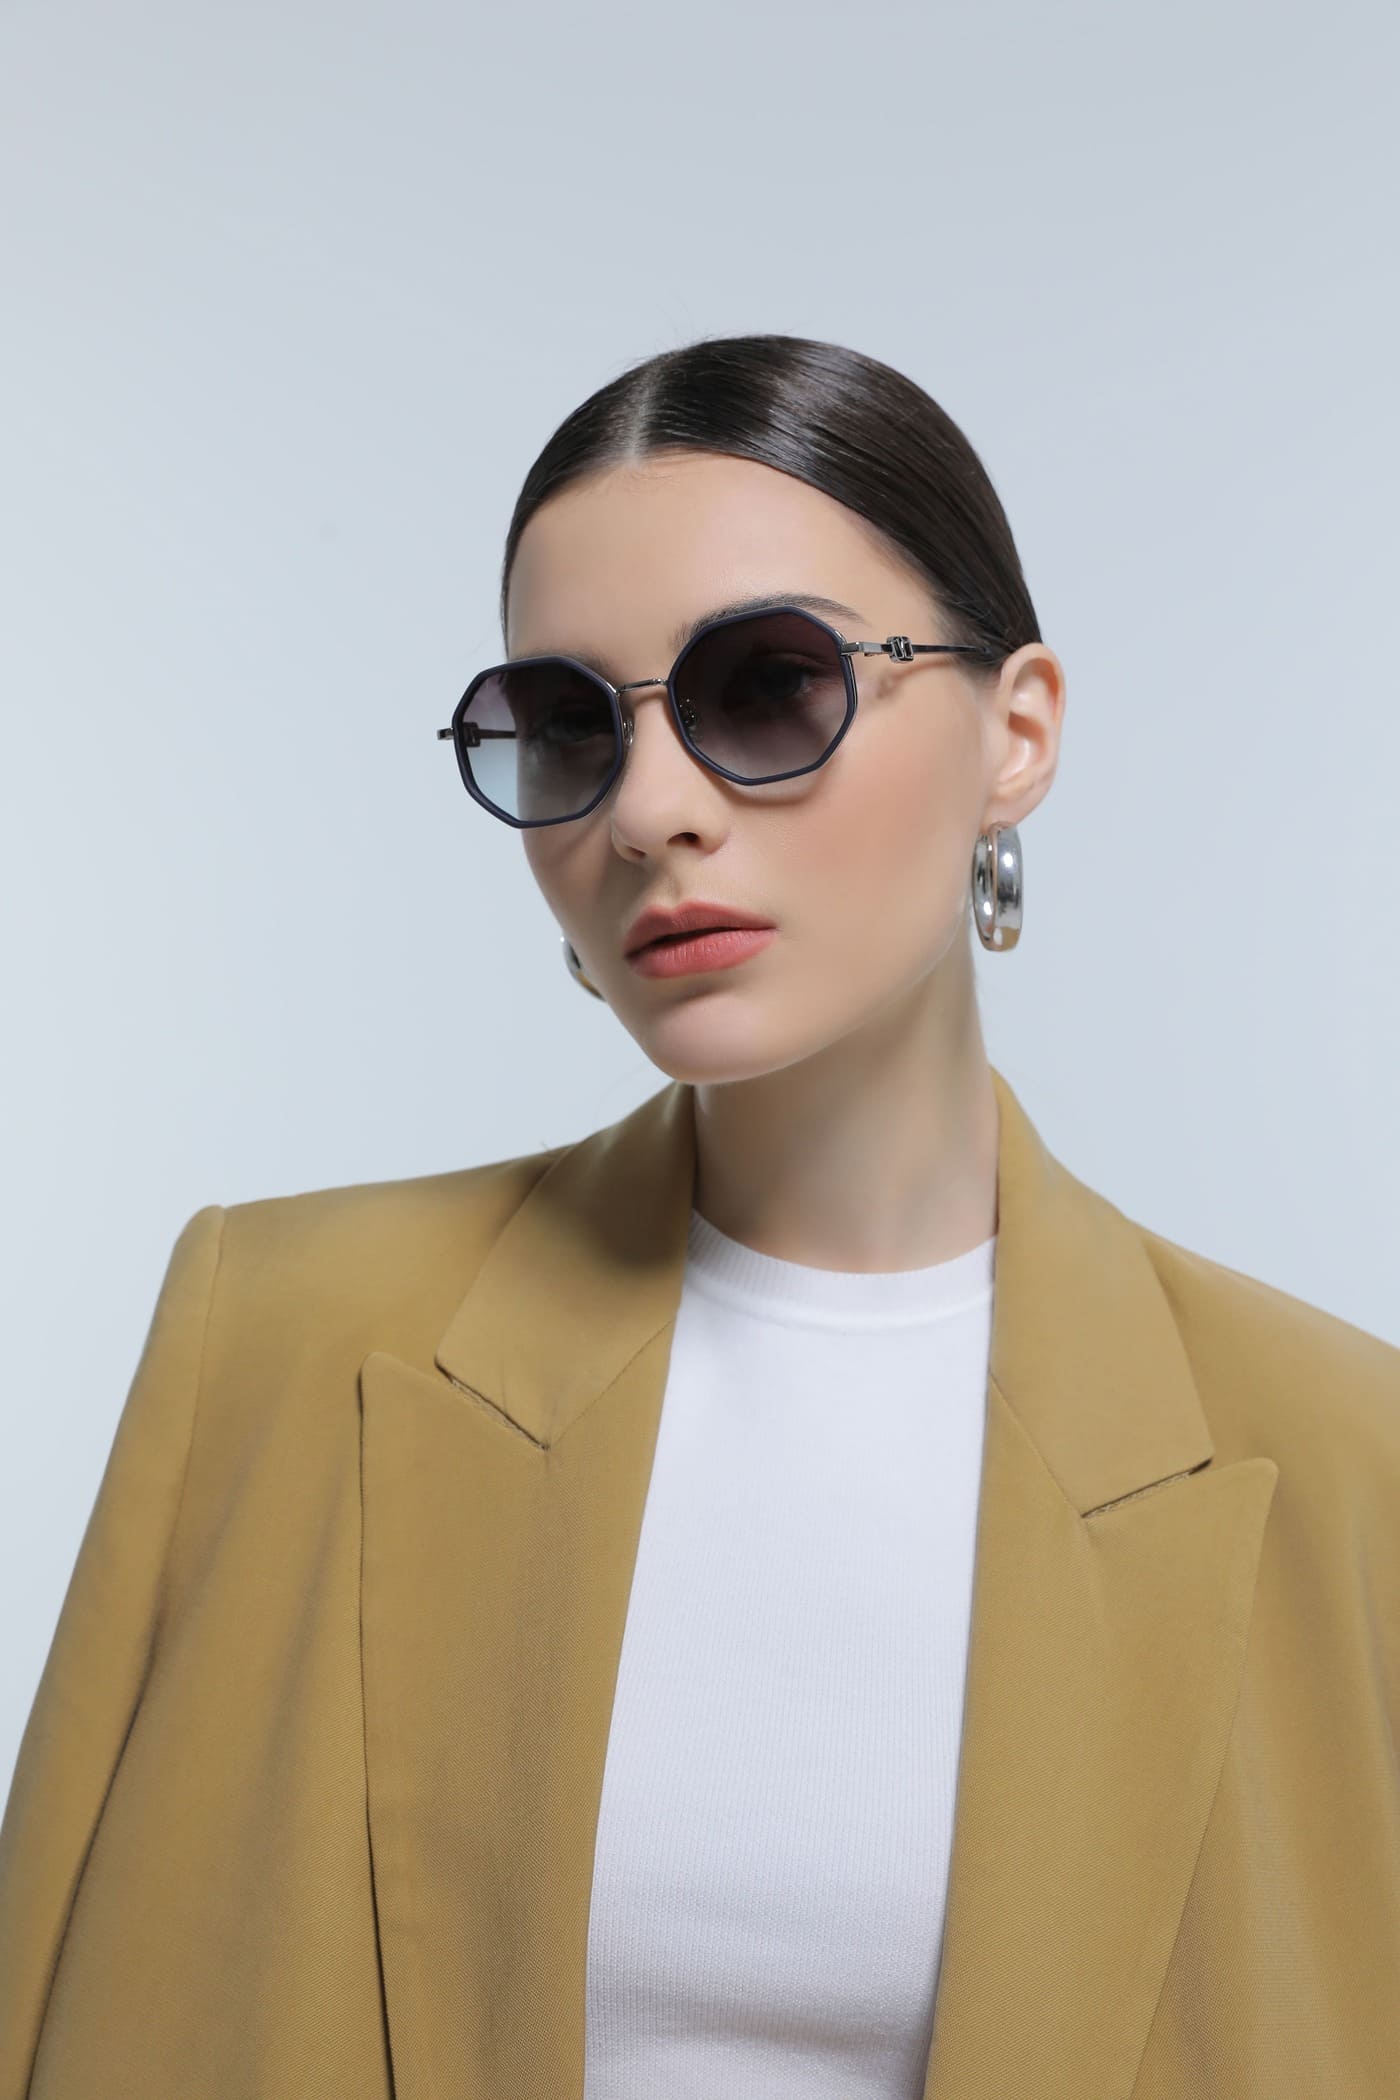 Giustizieri Vecchi's Trendsetting Fashion Sunglasses Collection